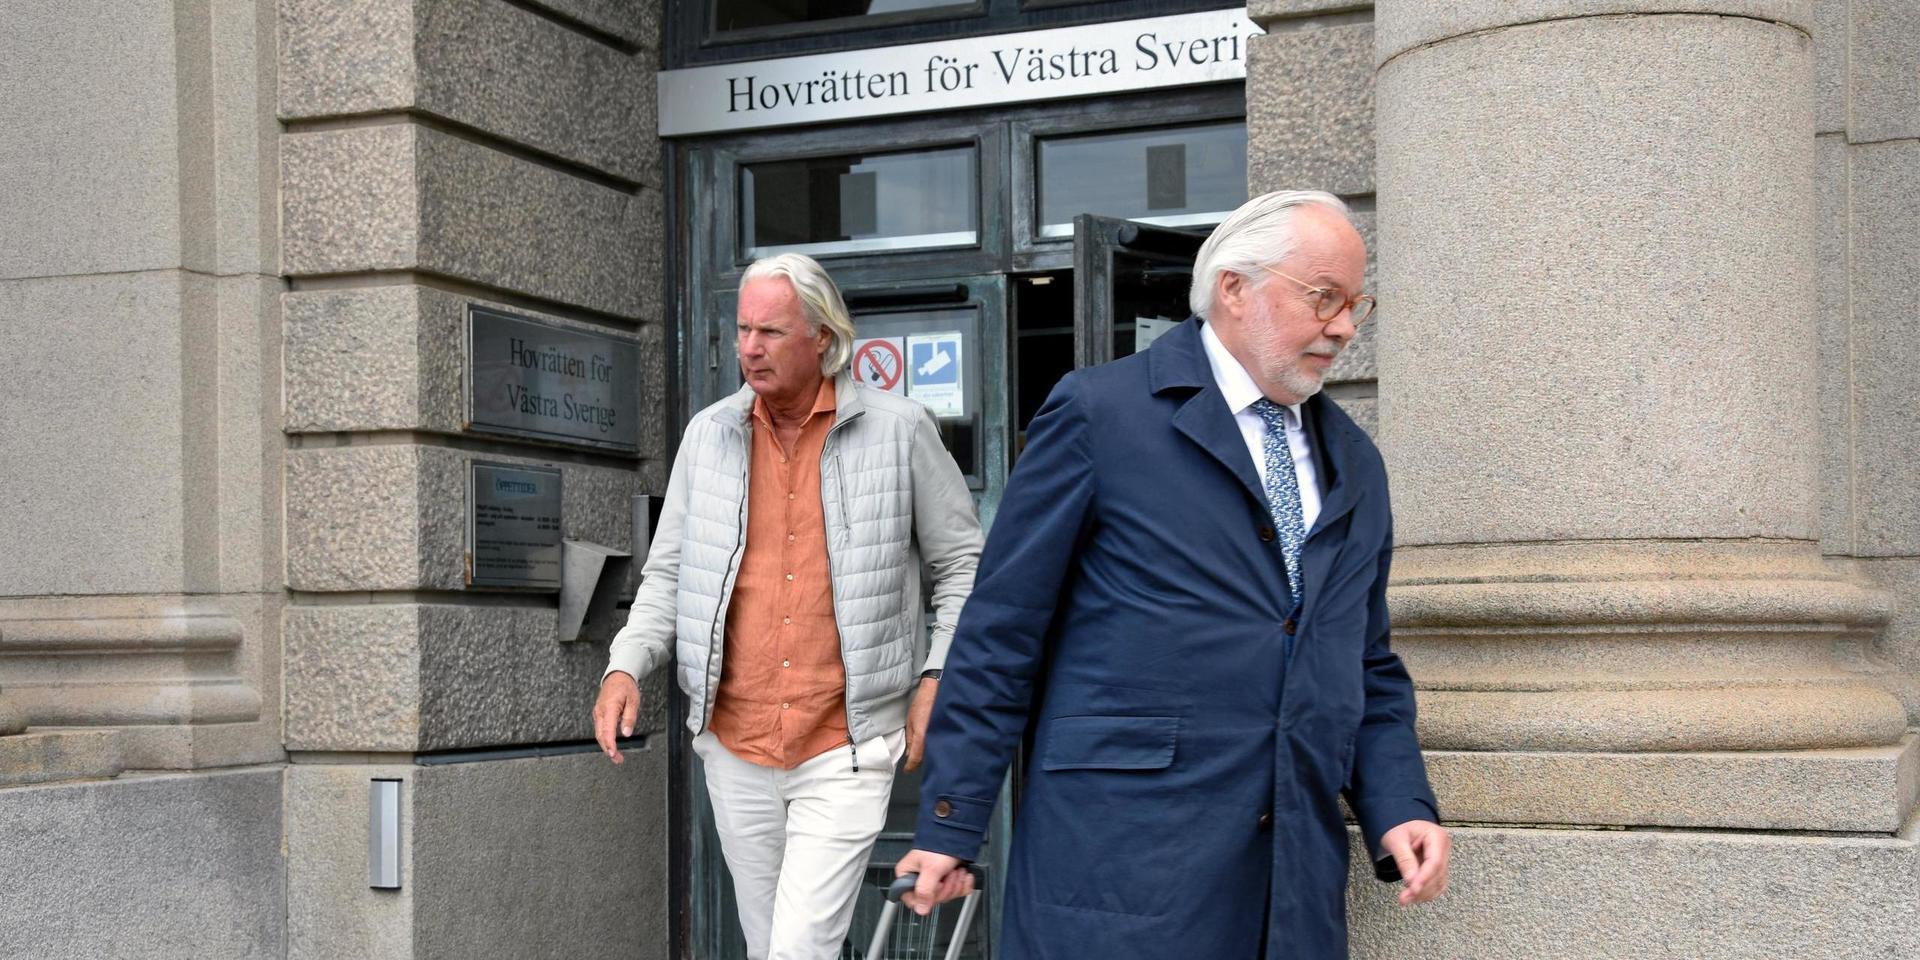 Advokat Lars Kruse räknade i rättssalen upp hur många gånger Hallandsposten skrivit om Jan Widikson, men han nämnde inte hur många av artiklarna som tagit upp saker som talar till Widiksons försvar.